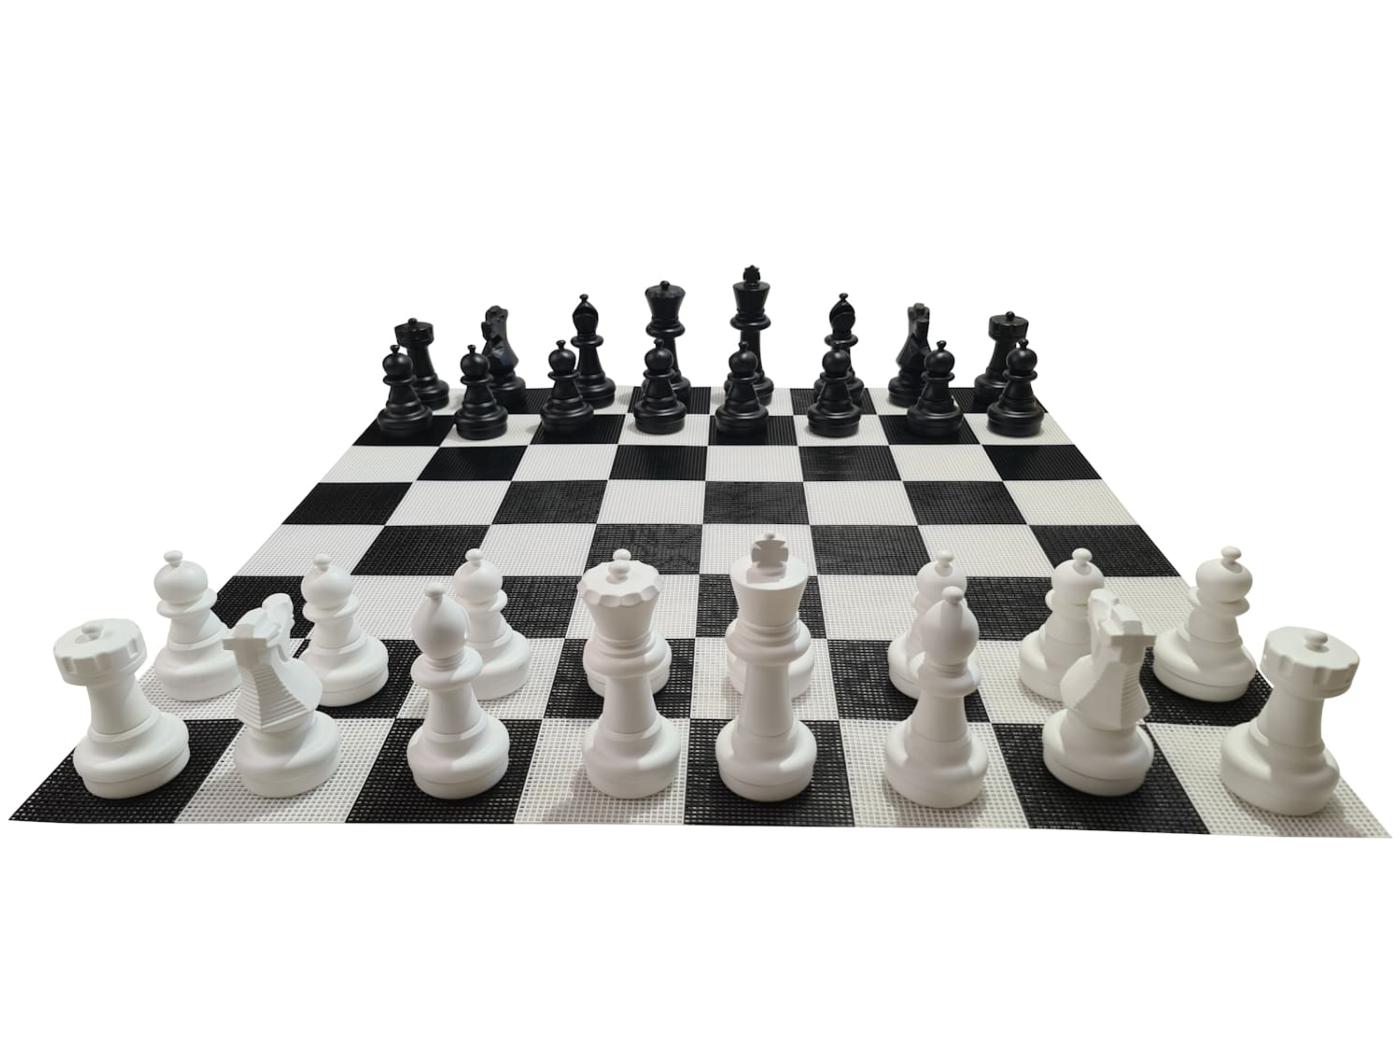 Juego de ajedrez gigante con tablero rígido gigante incluido juego completo sobre tablero